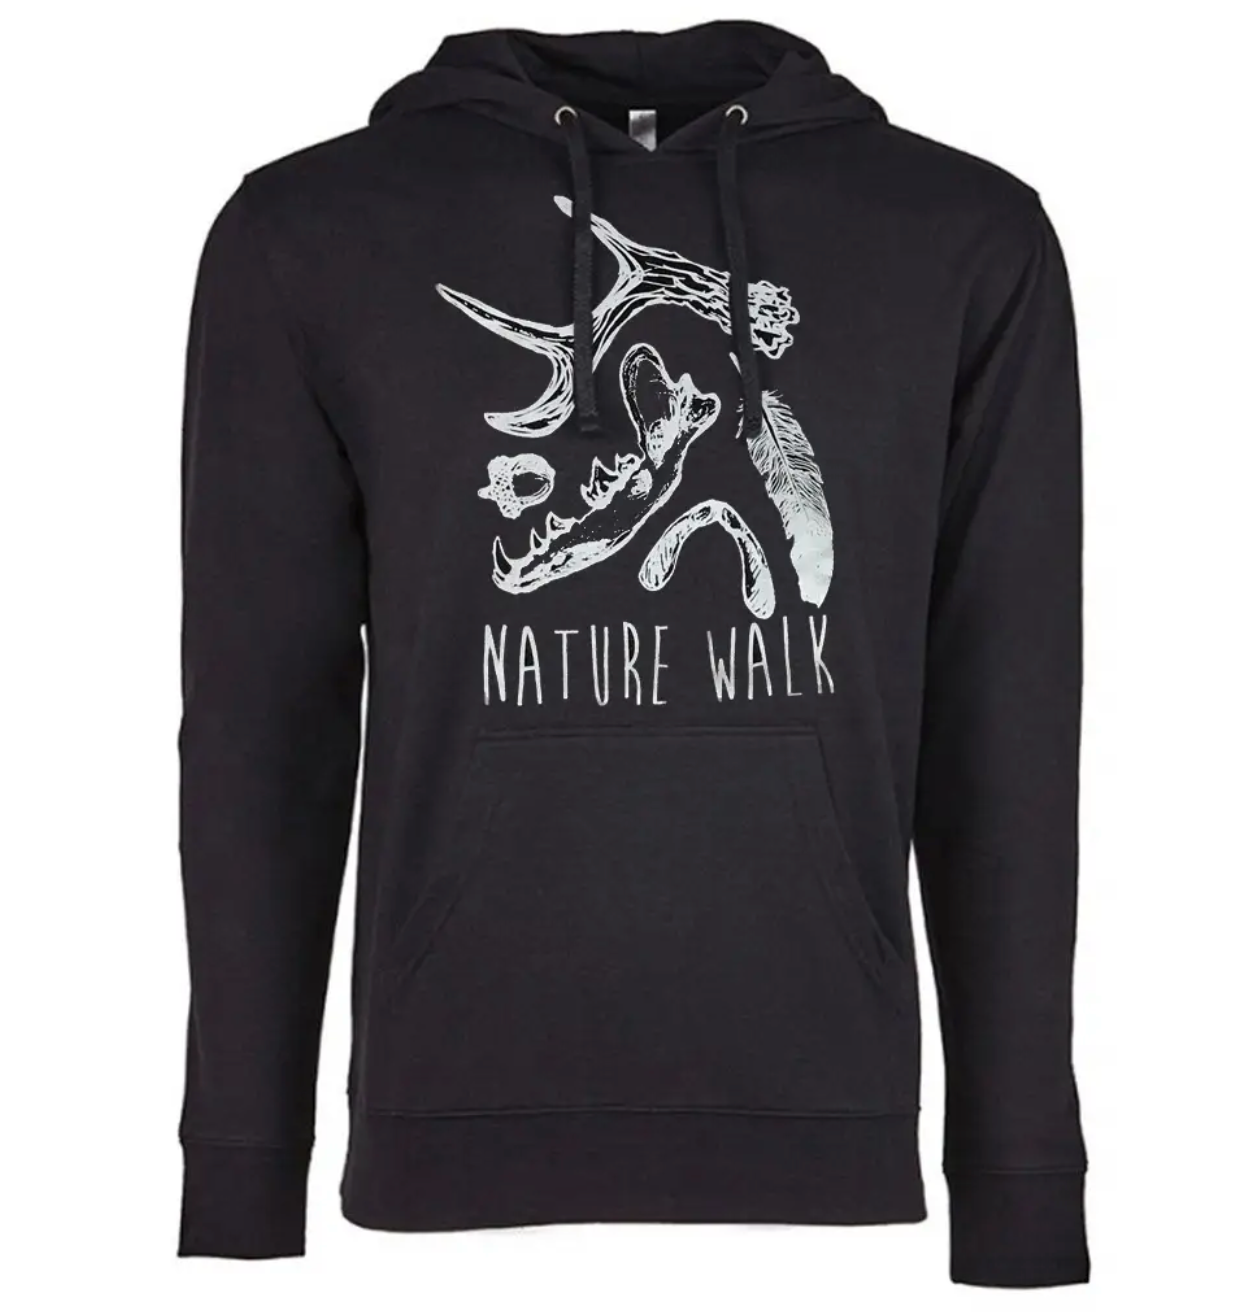 Nature Walk Fleece Lined Hooded Sweatshirt